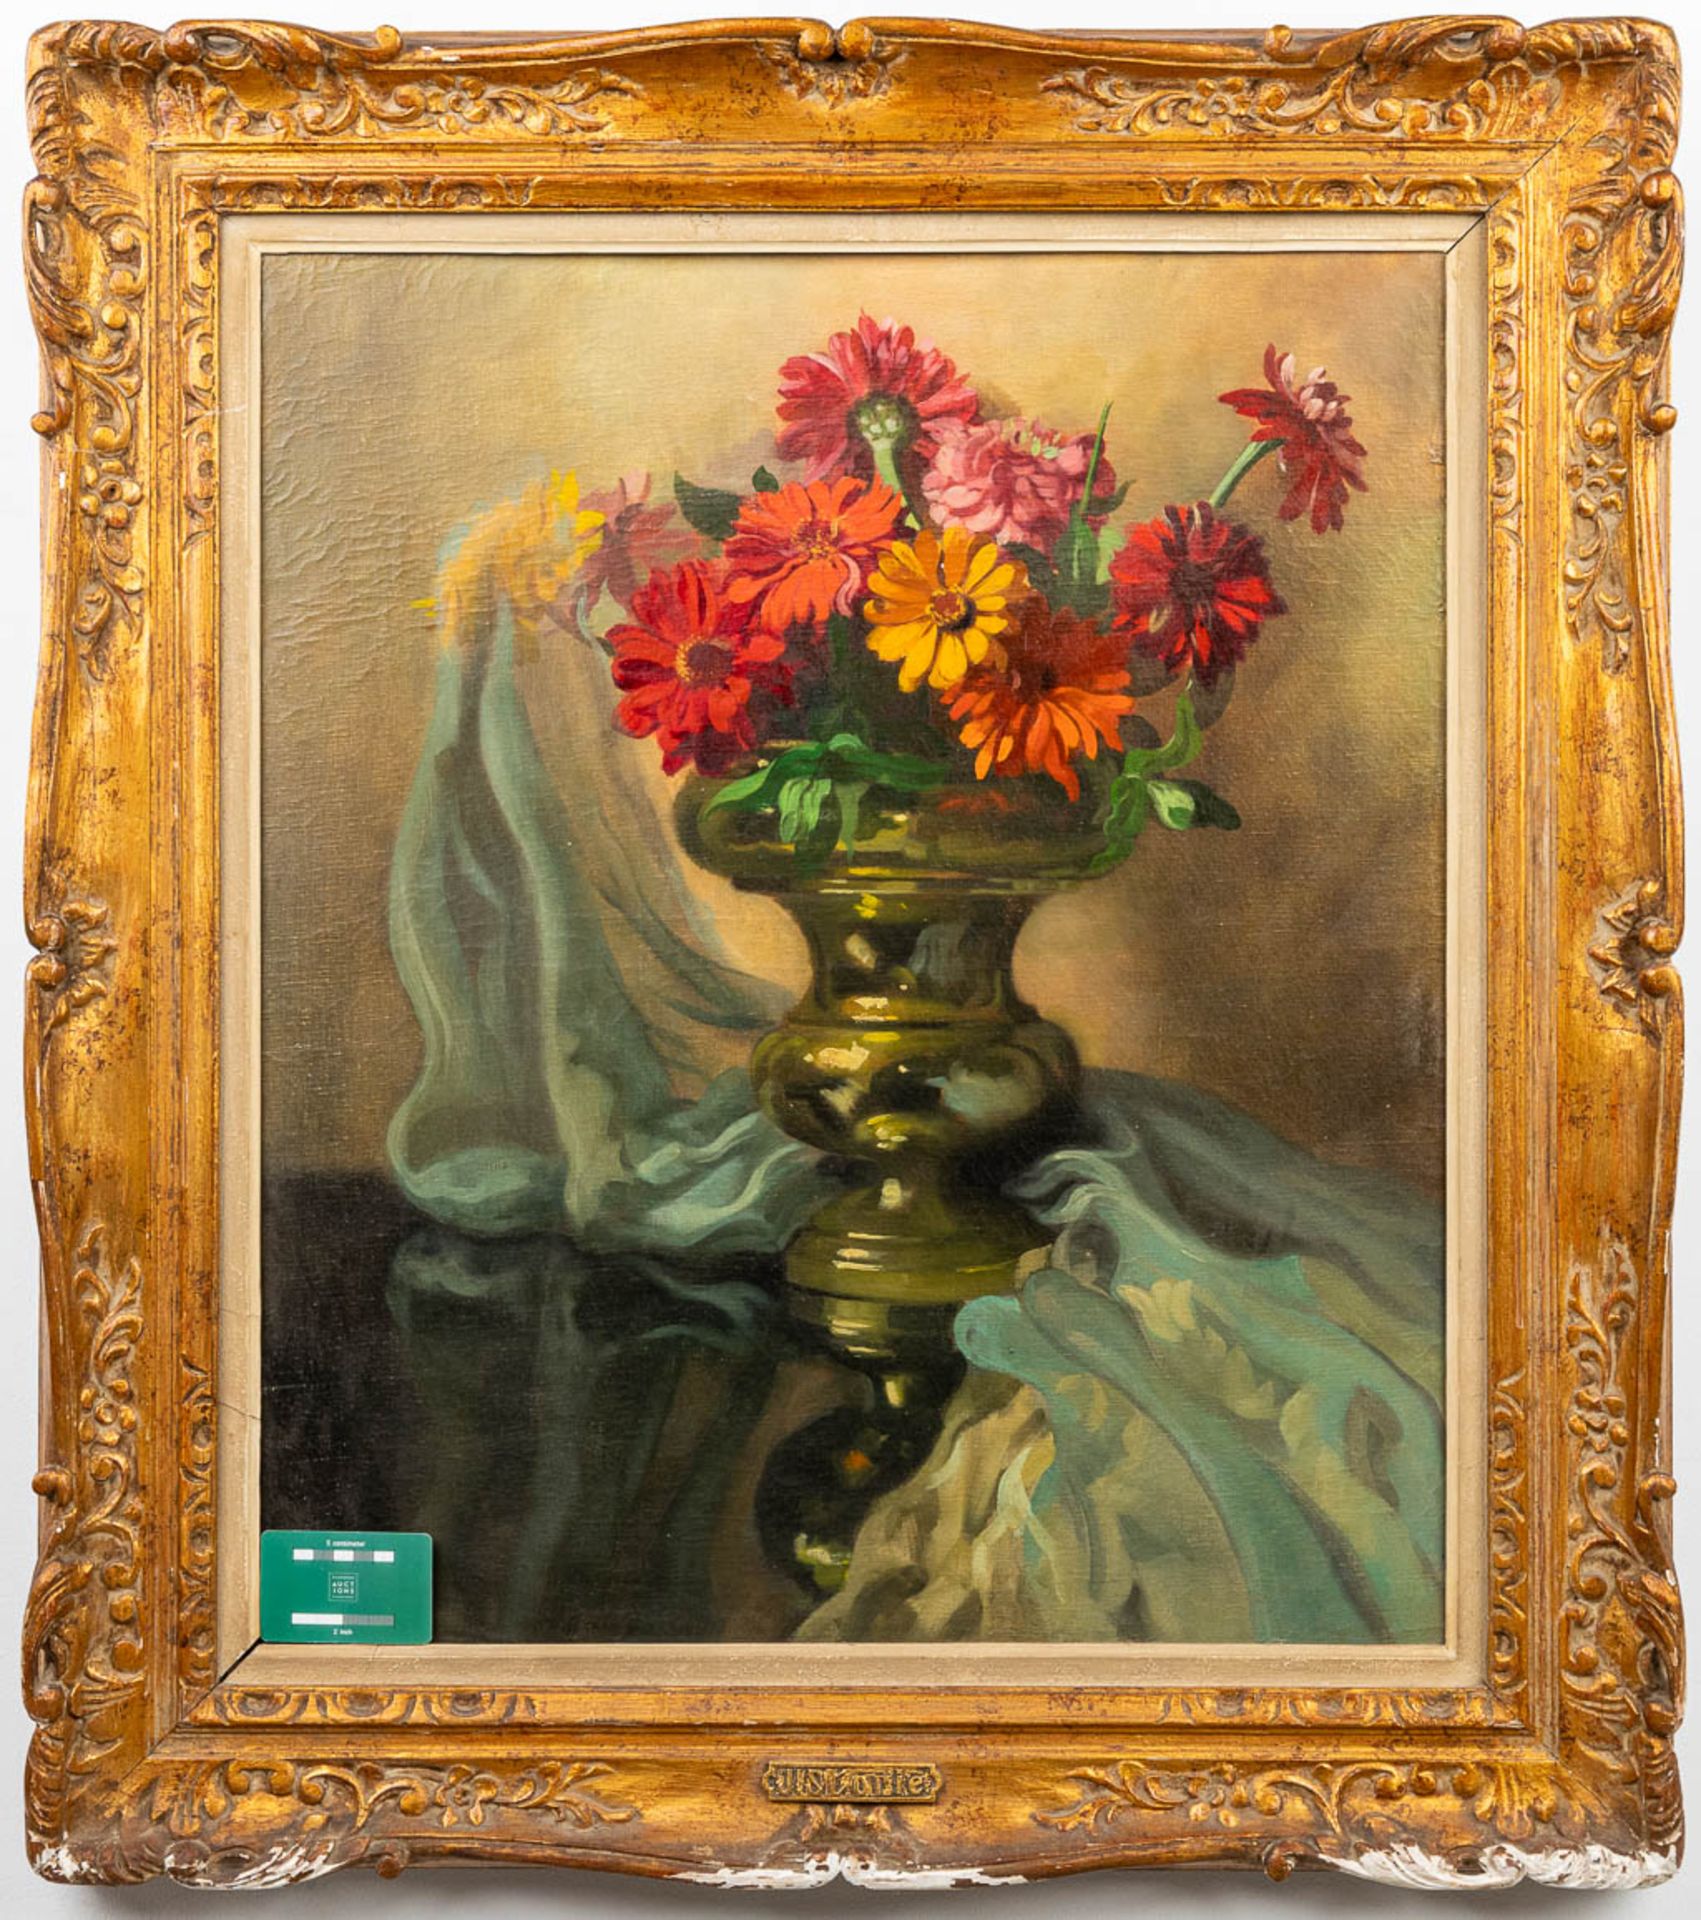 José STORIE (1899-1961) 'Flower Bouquet' a still life painting, oil on canvas. (60 x 70 cm) - Bild 6 aus 6